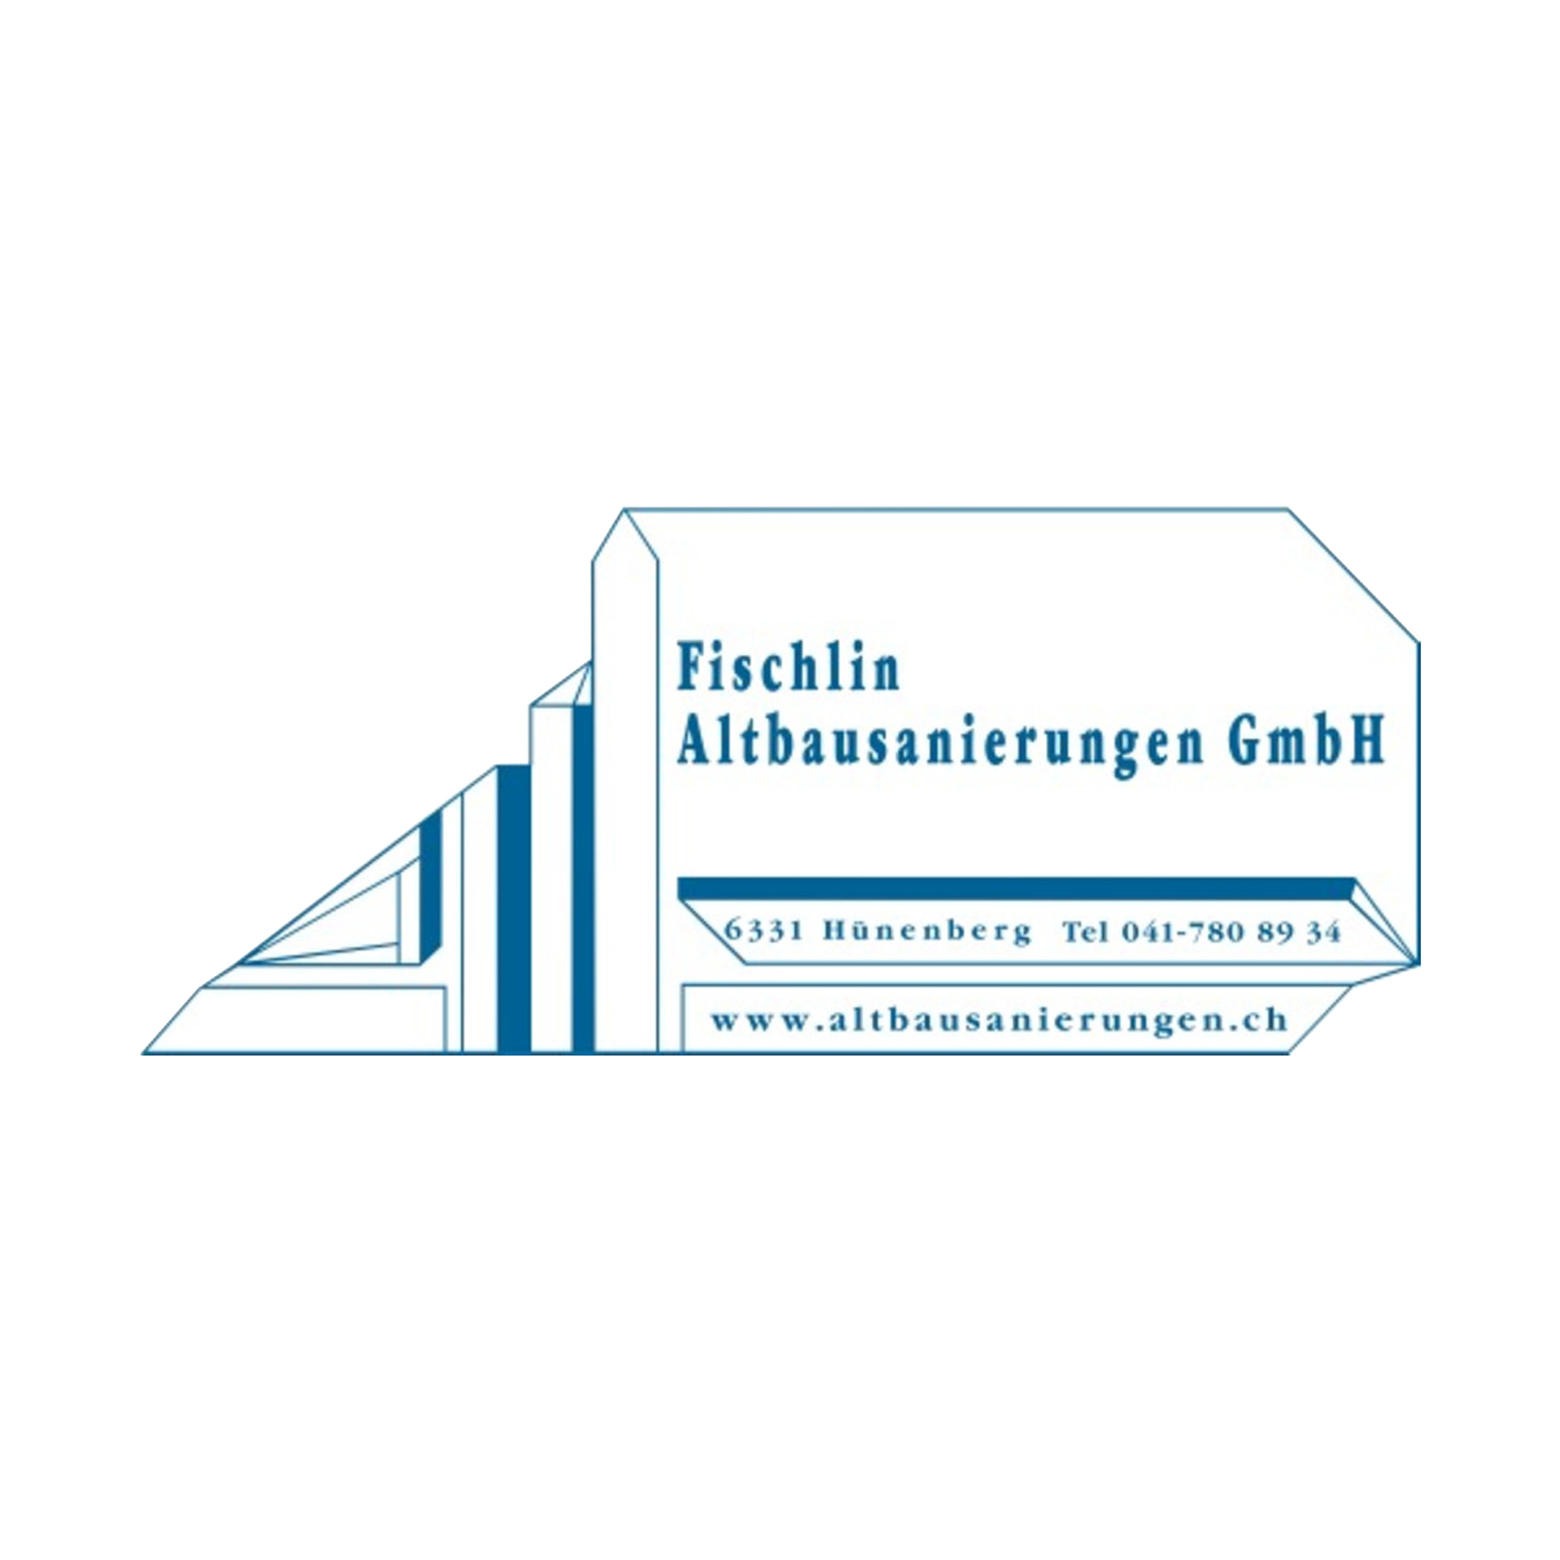 Fischlin Altbausanierungen GmbH Logo